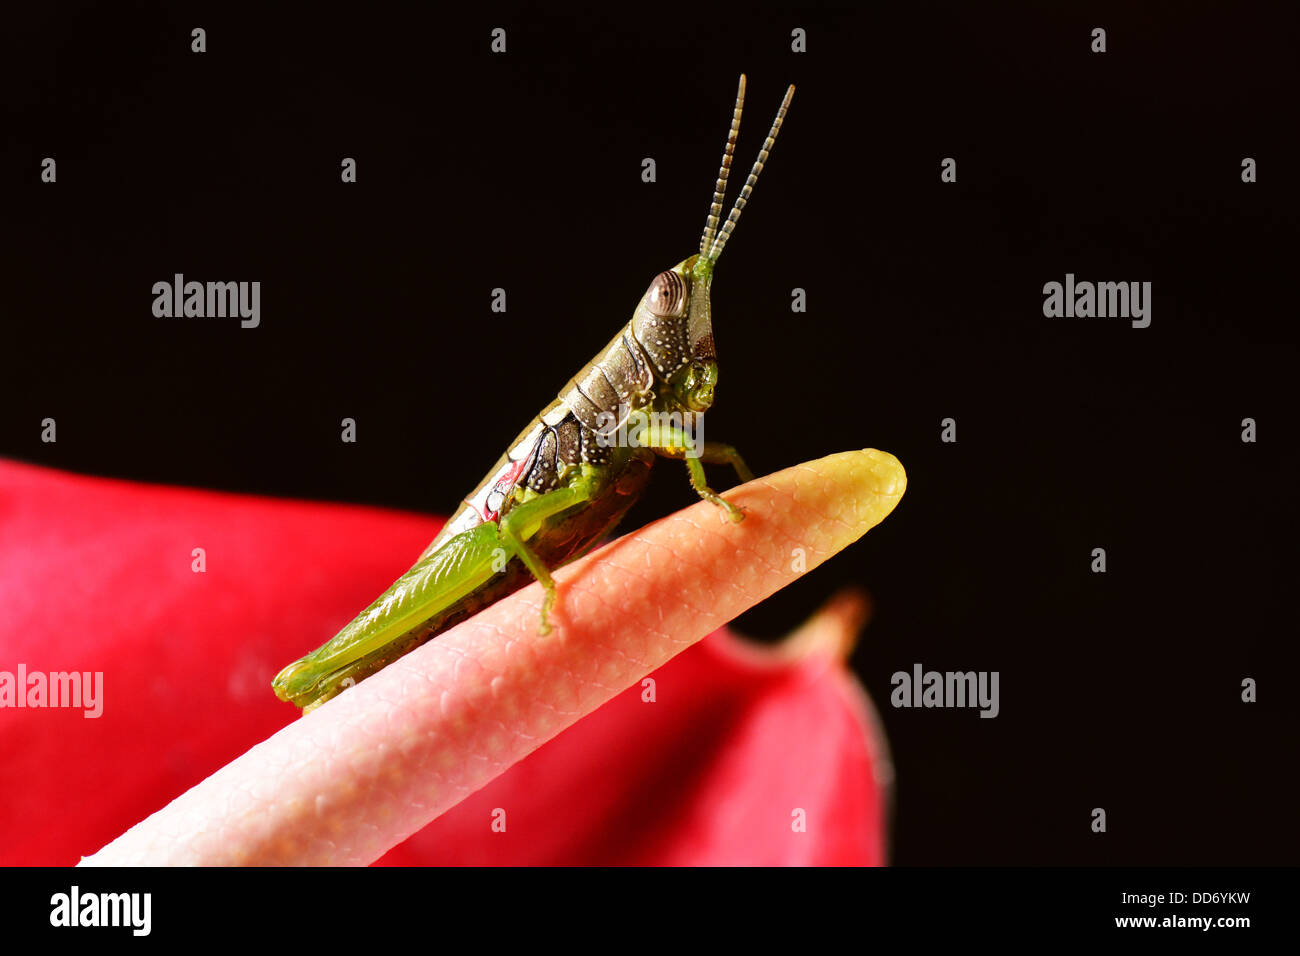 Grasshopper on Anthurium flower Stock Photo